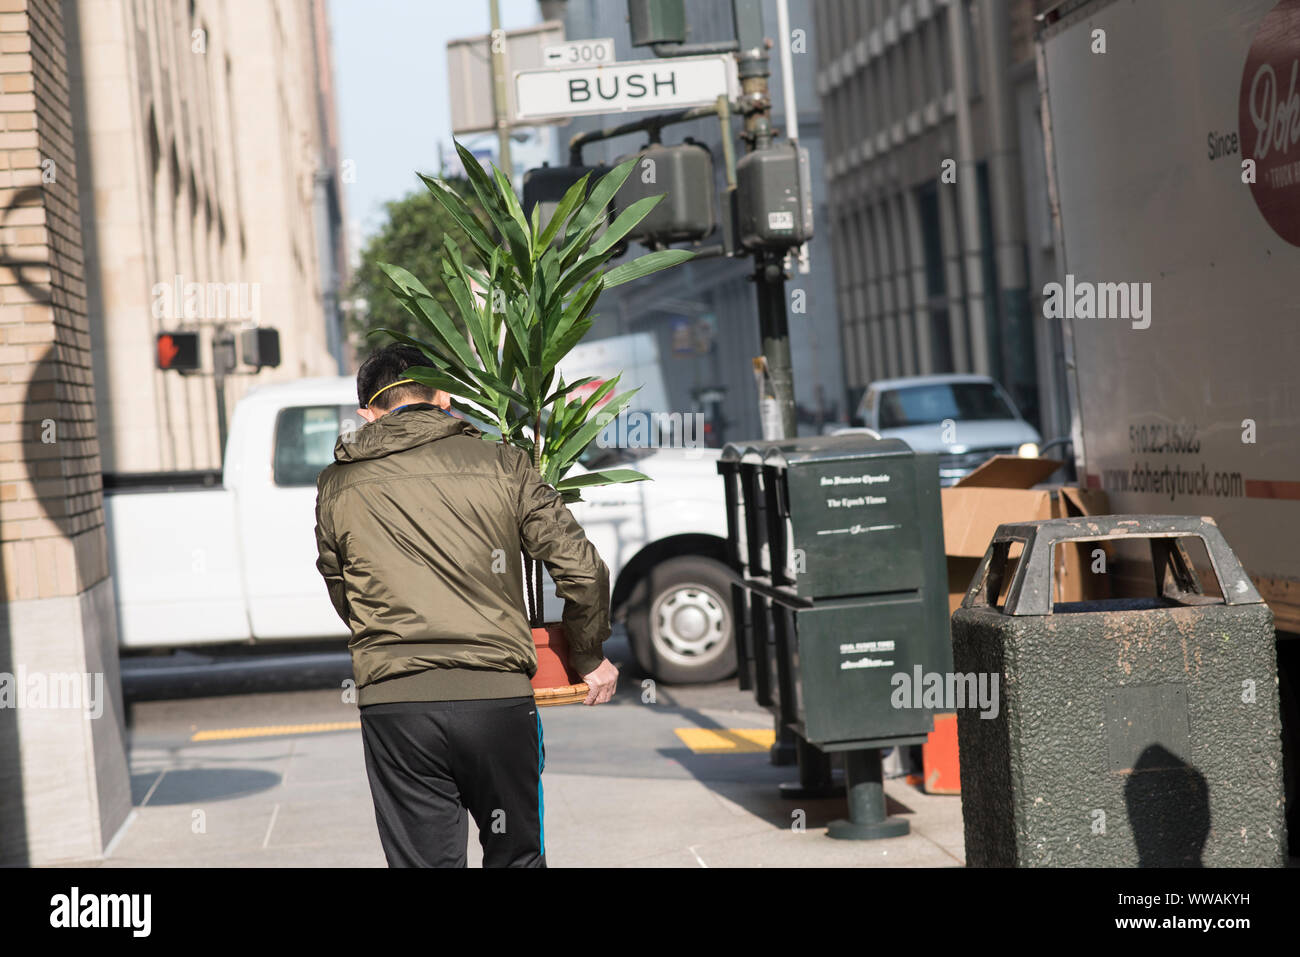 San Francisco, California - 17 Novembre 2018: un uomo che porta una pianta cespugliosa passeggiate nella parte anteriore del Bush Street sign in il quartiere finanziario. Foto Stock